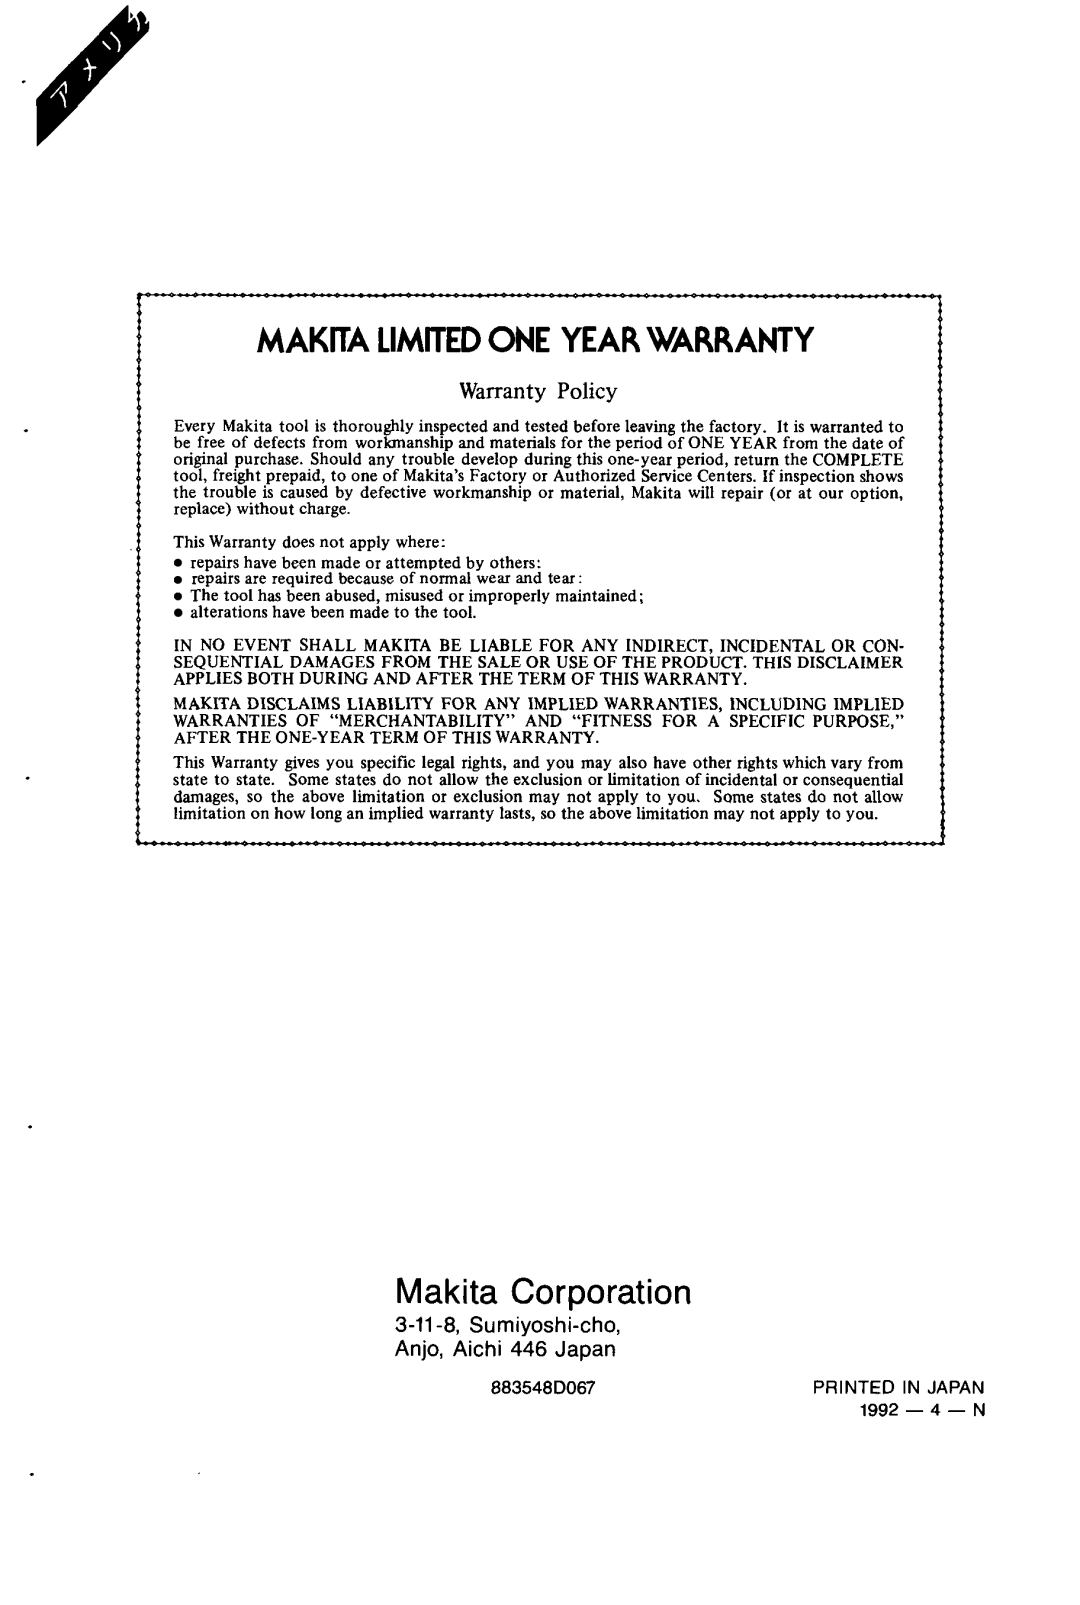 Makita 6710DW instruction manual Makita Corporation, Makita Limitedone Year Warranty, Warranty Policy, 4 - N, 883548D067 